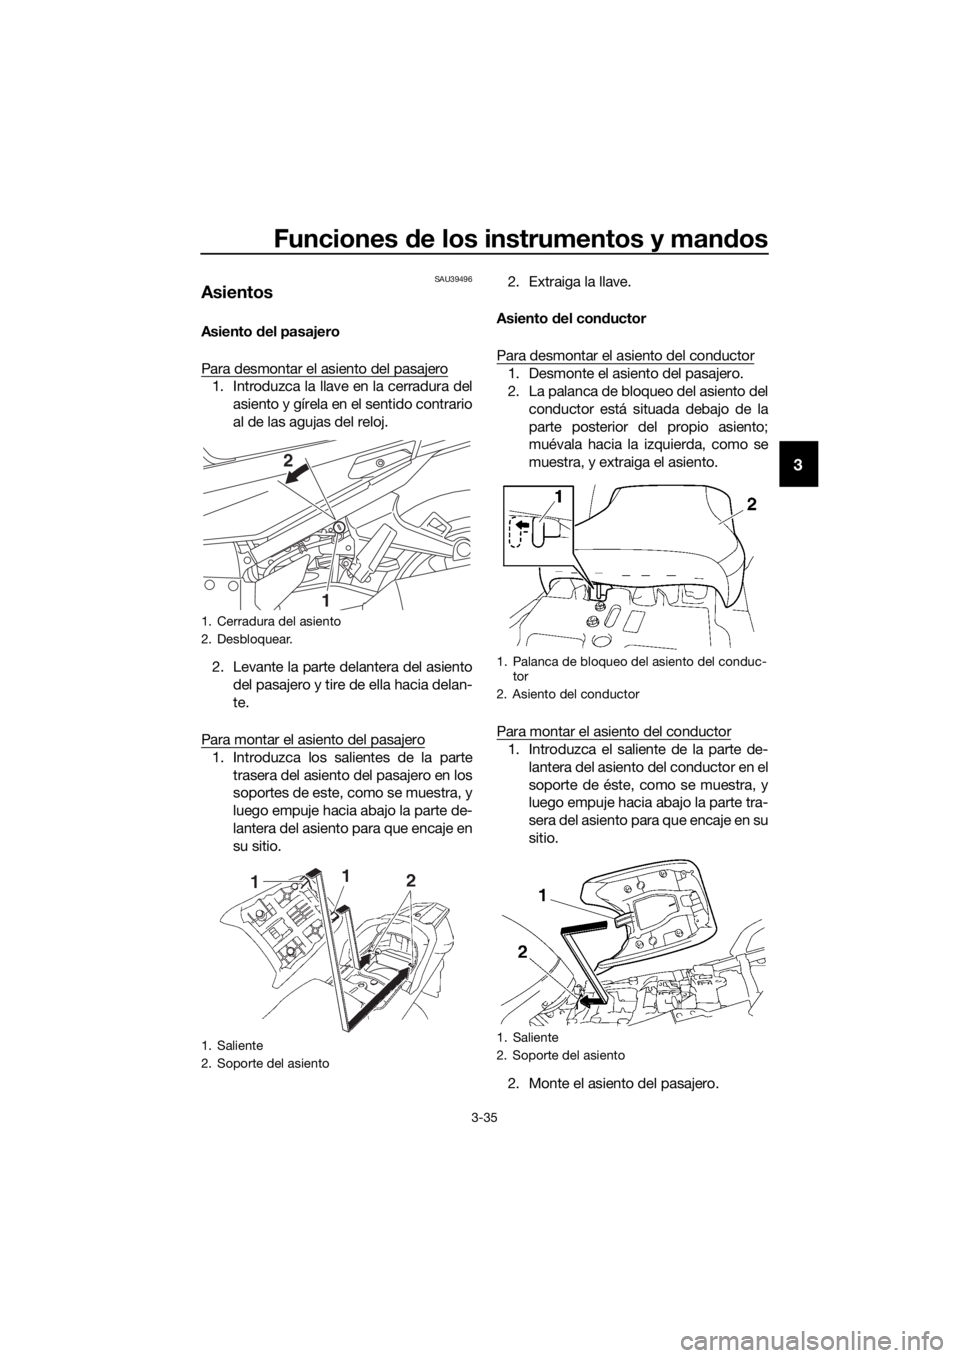 YAMAHA FJR1300AS 2018  Manuale de Empleo (in Spanish) Funciones de los instrumentos y man dos
3-35
3
SAU39496
Asientos
Asiento  del pasajero
Para desmontar el asiento del pasajero
1. Introduzca la llave en la cerradura del asiento y gírela en el sentido